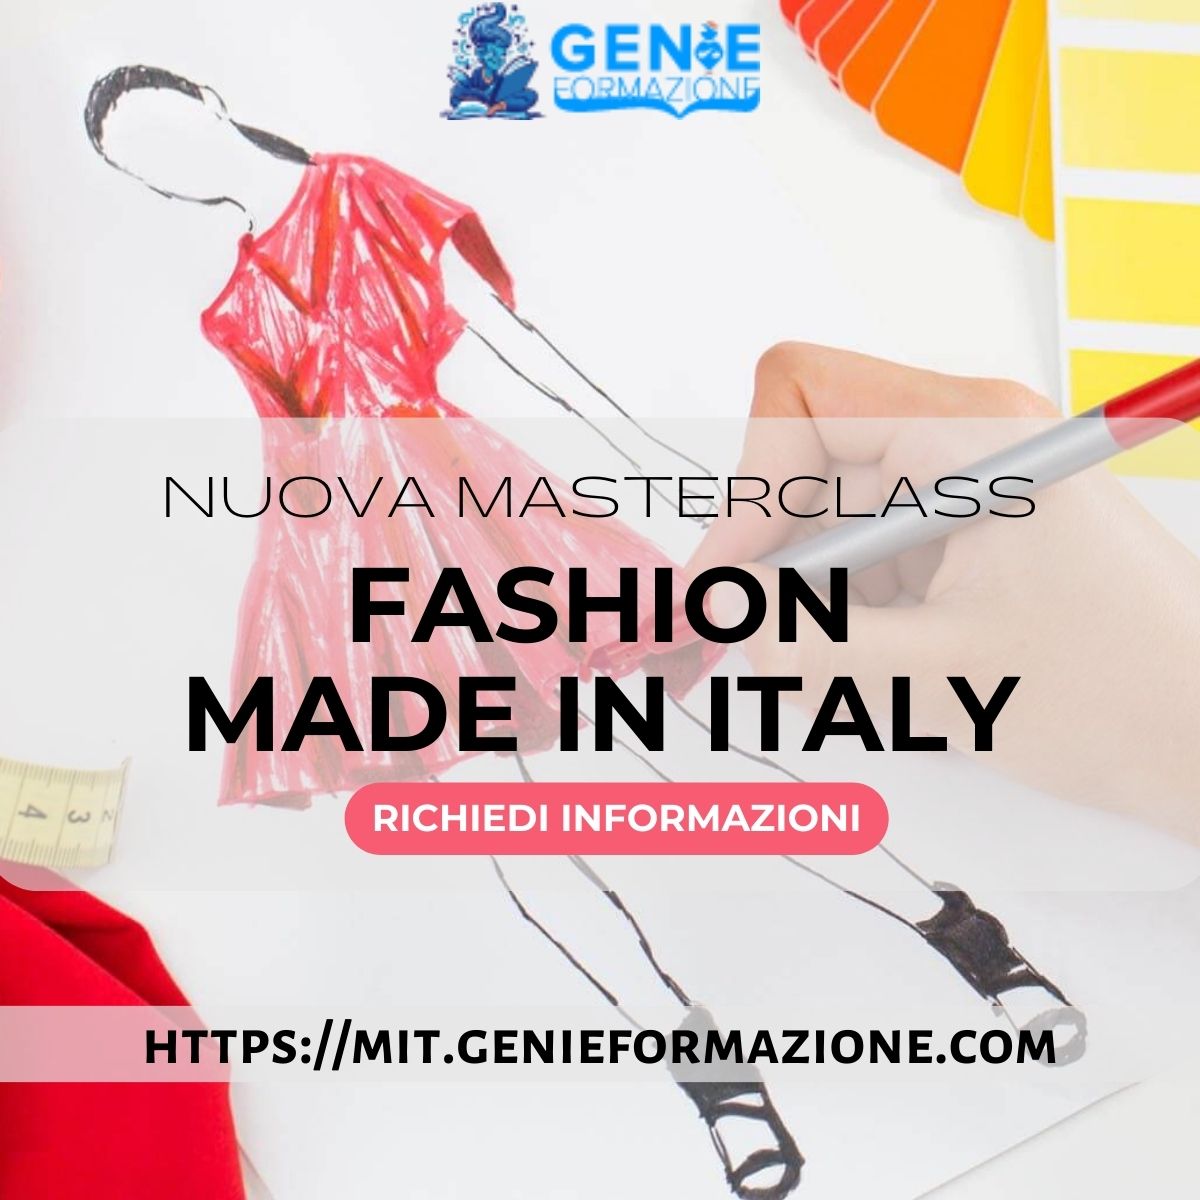 Nuova Masterclass "Fashion Made in Italy"